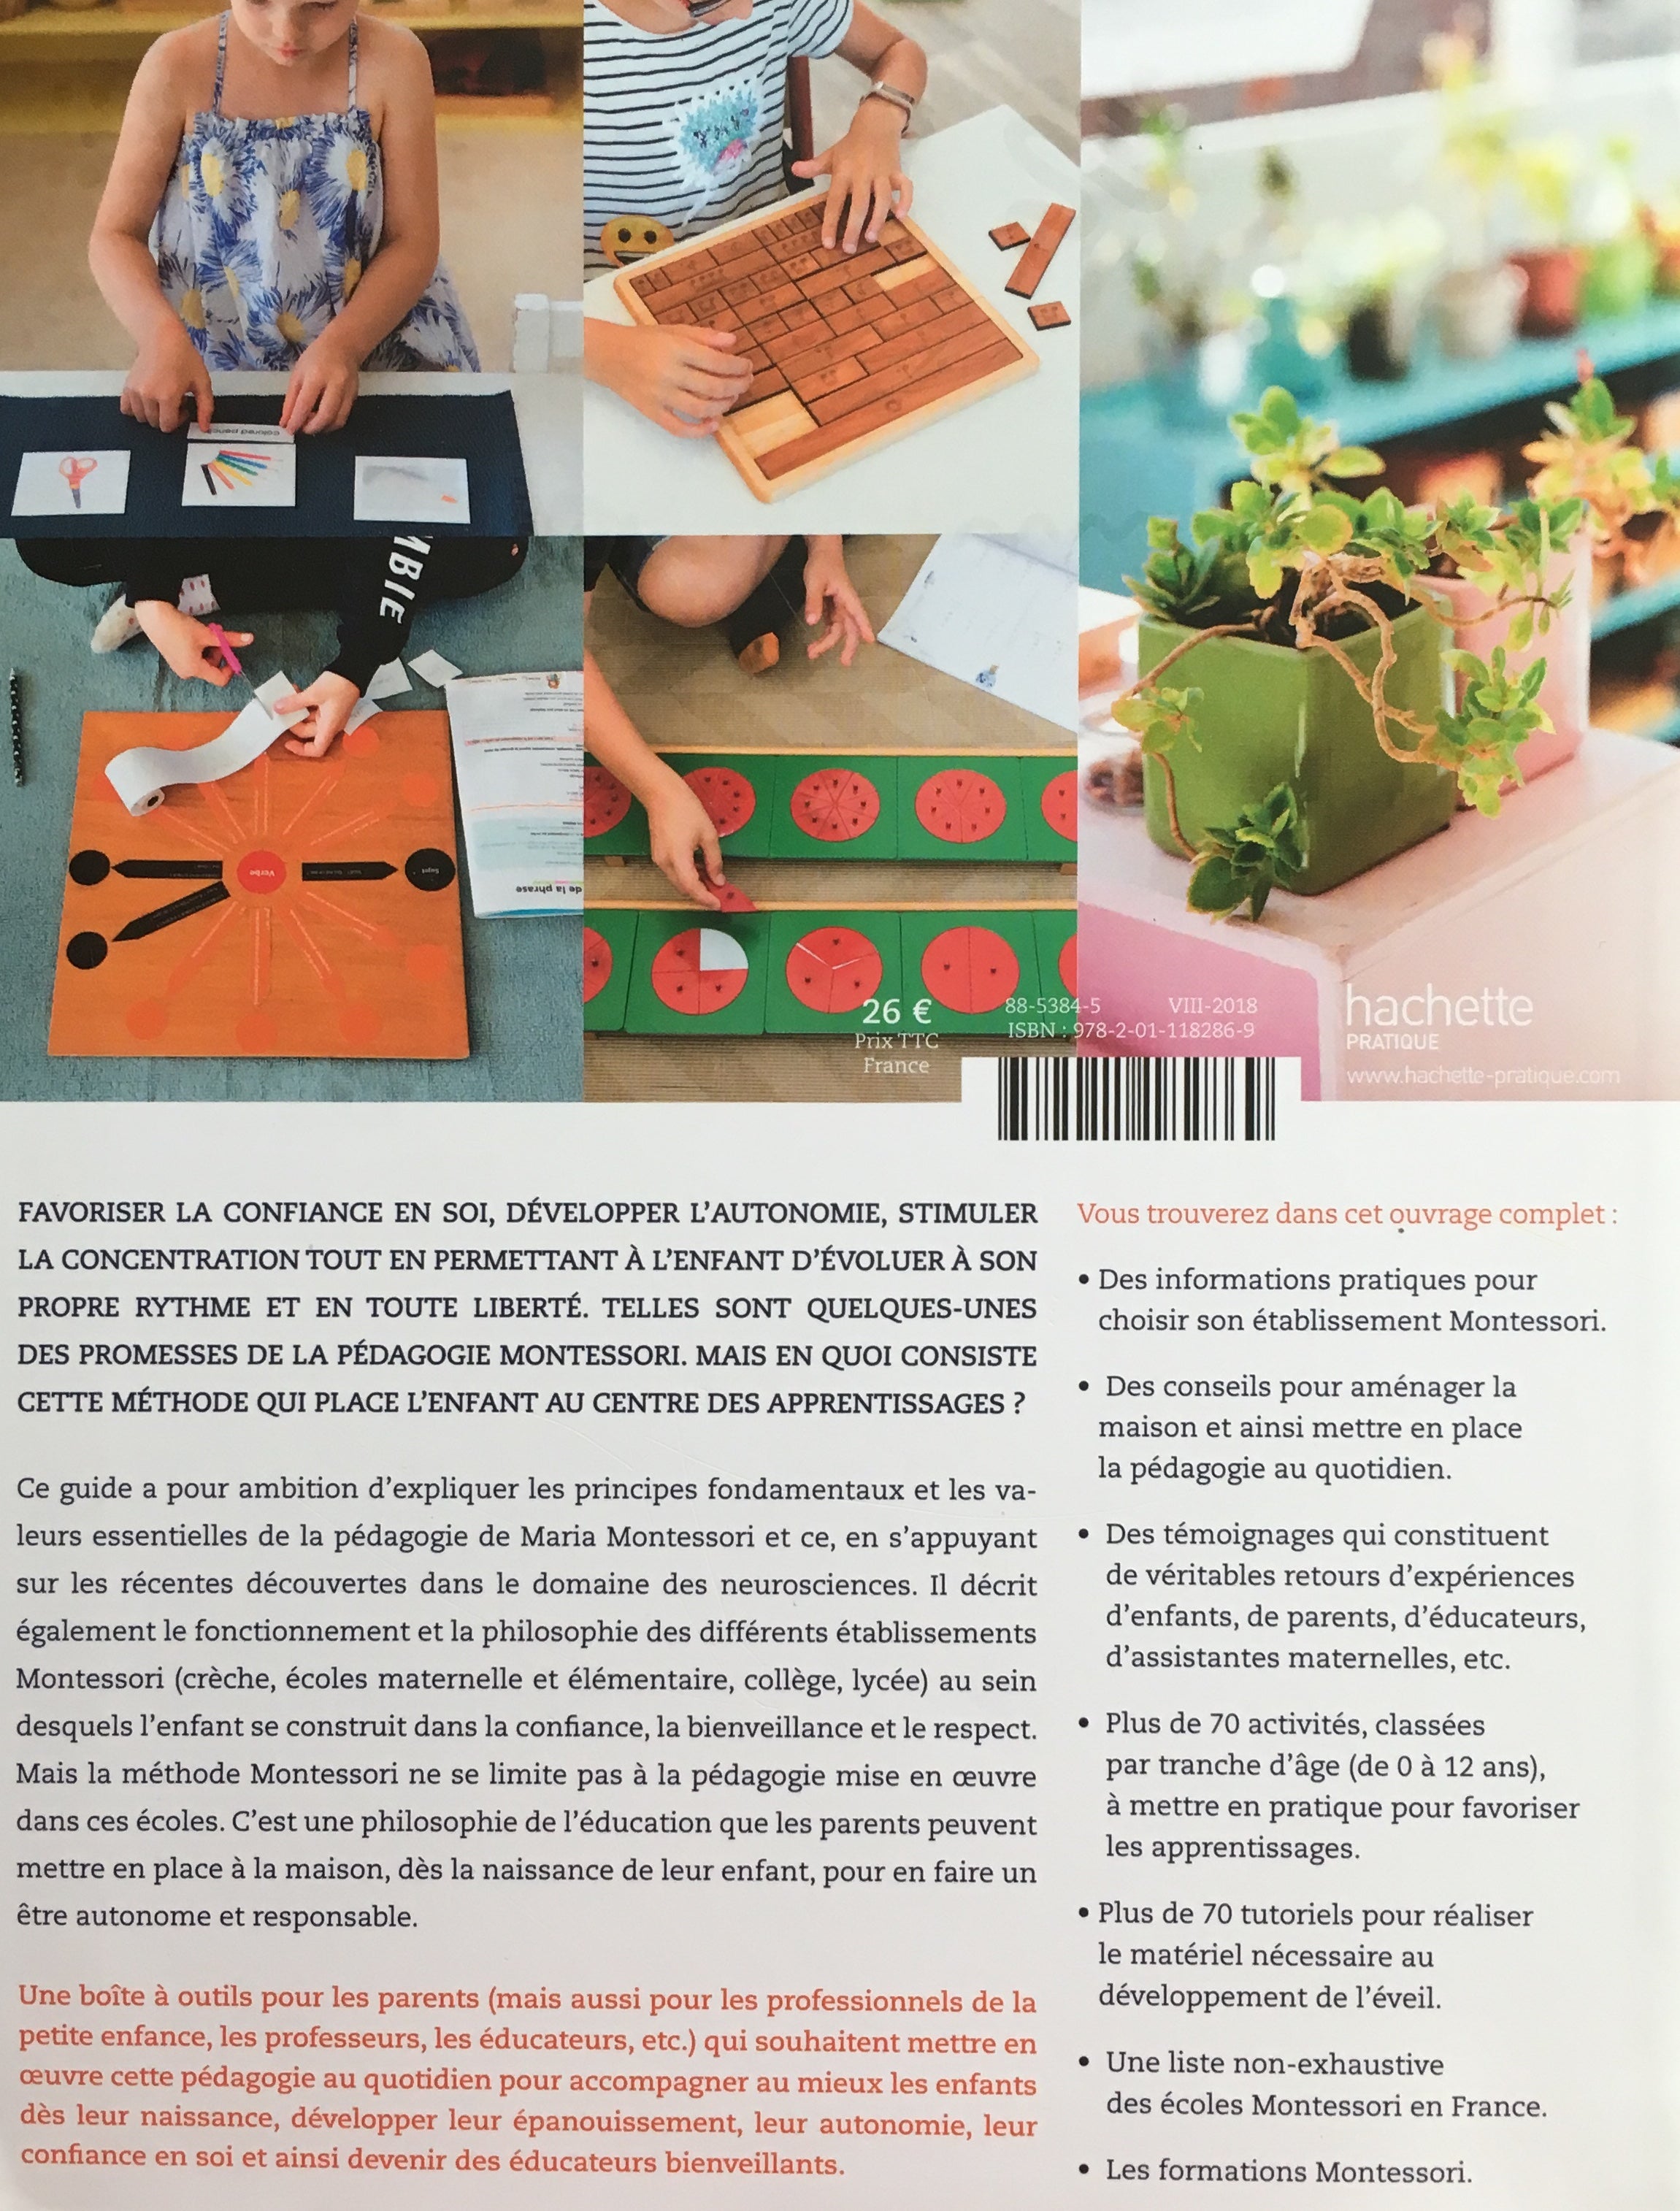 The Hachette Guide to Montessori Pedagogy